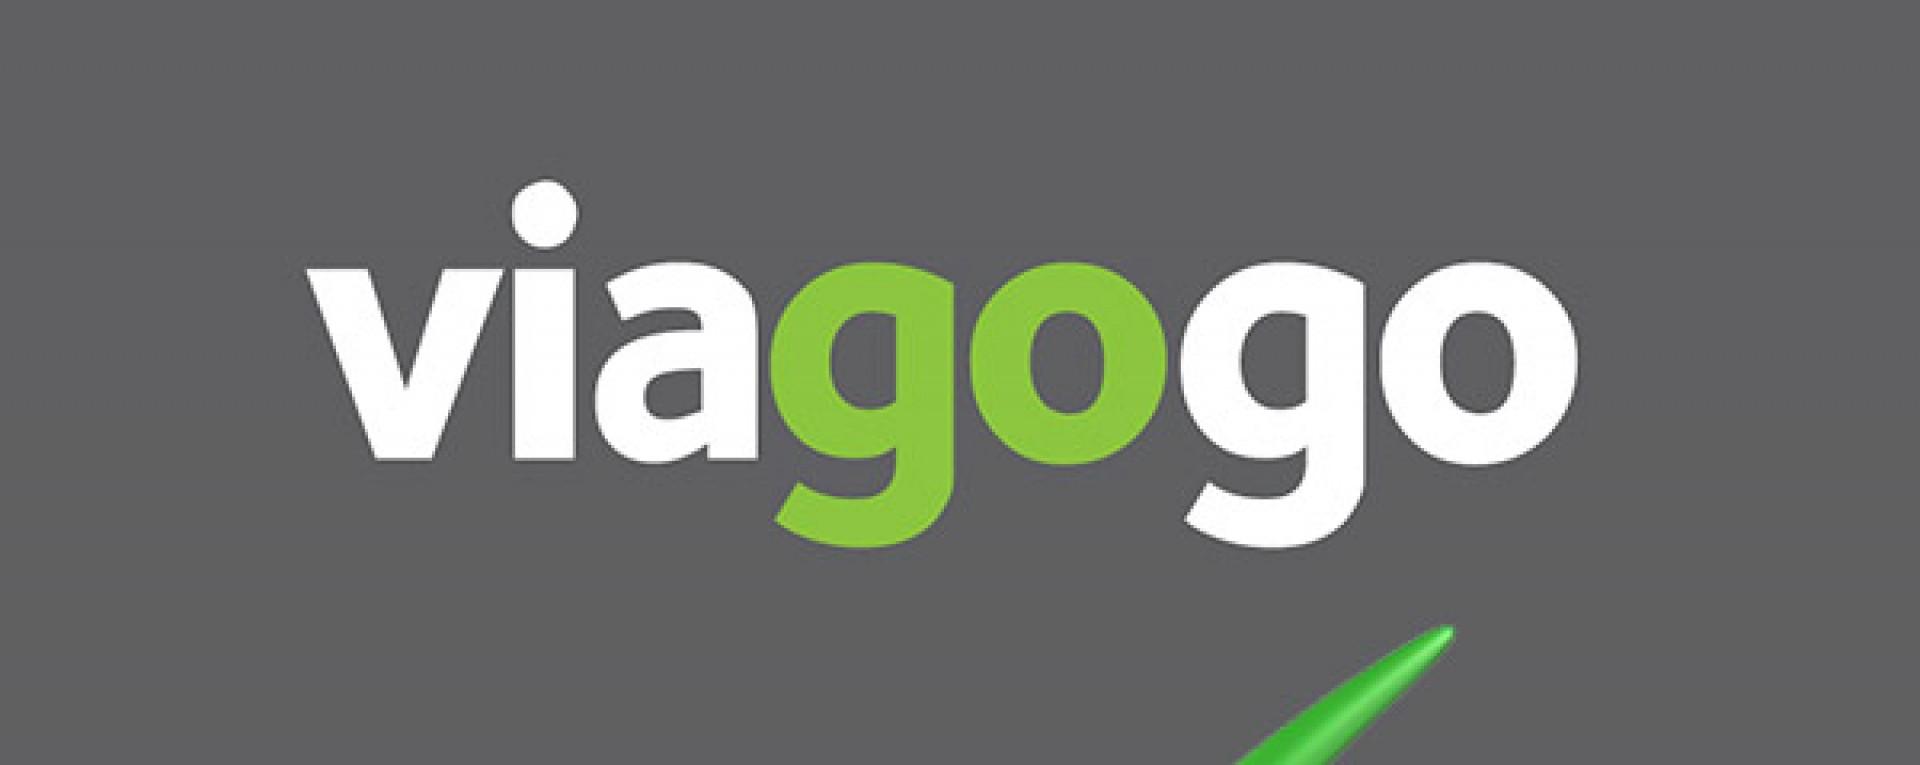 Viagogo Discount Code